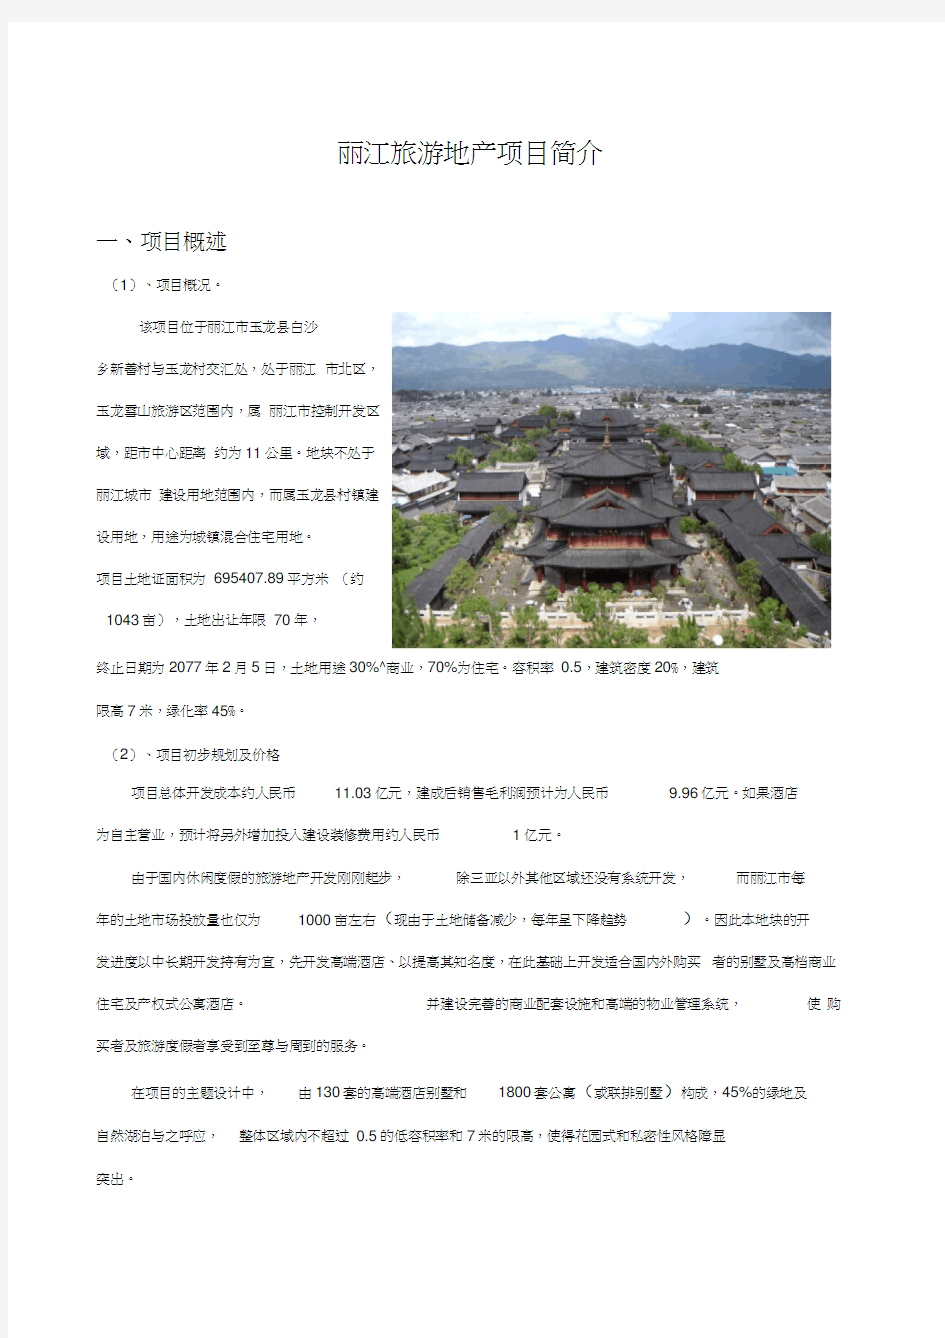 丽江旅游地产项目背景分析旅游地产资料